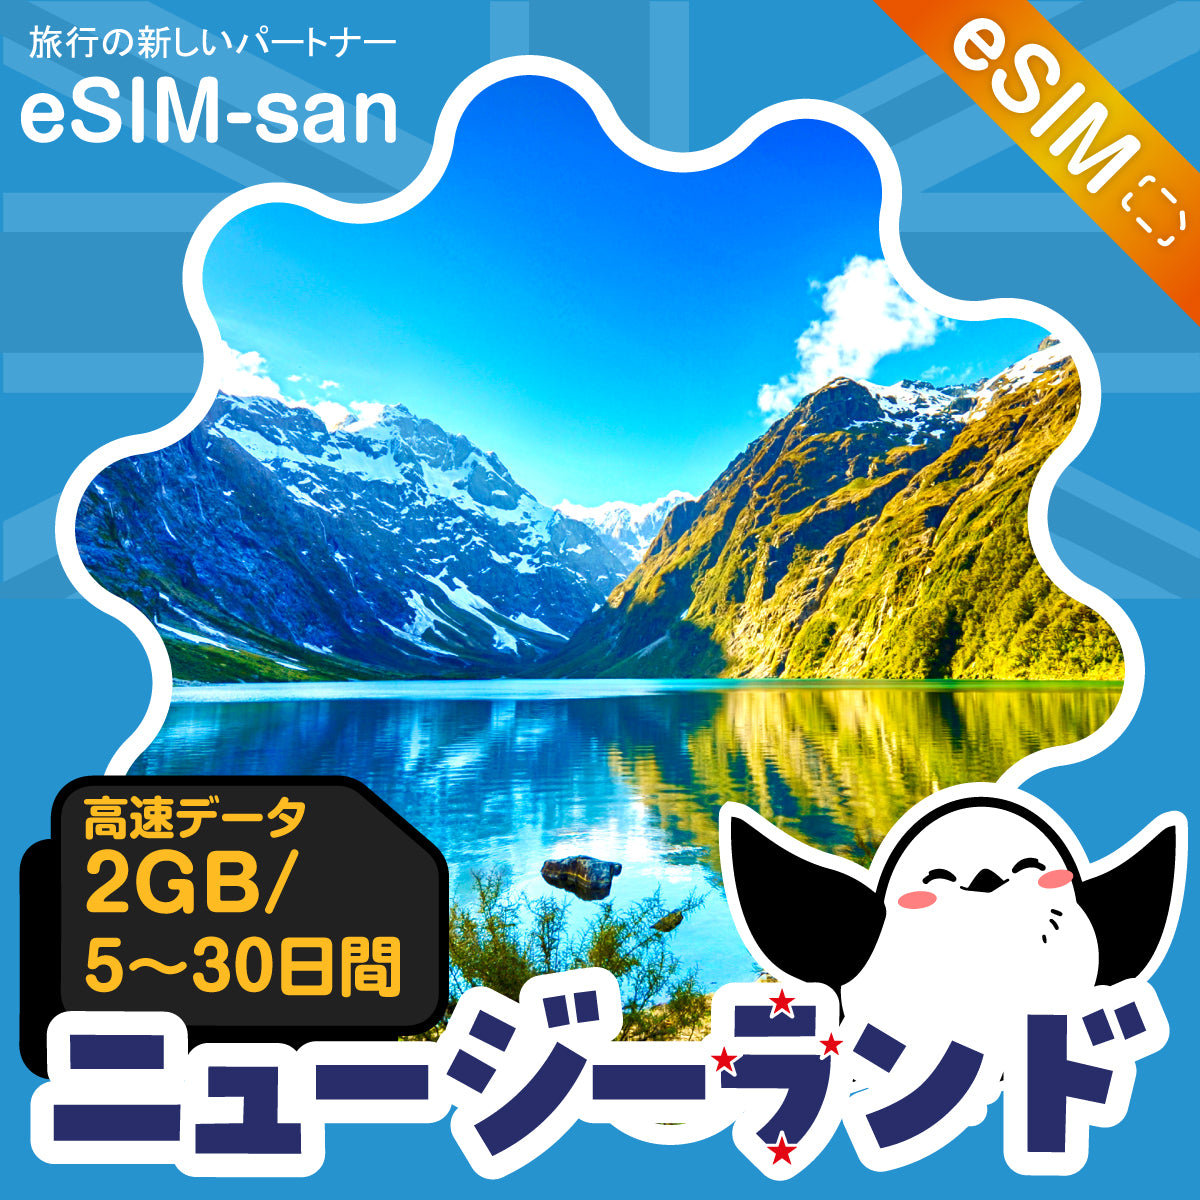 ニュージーランドeSIMの2GB/dayプラン画像_eSIM-san